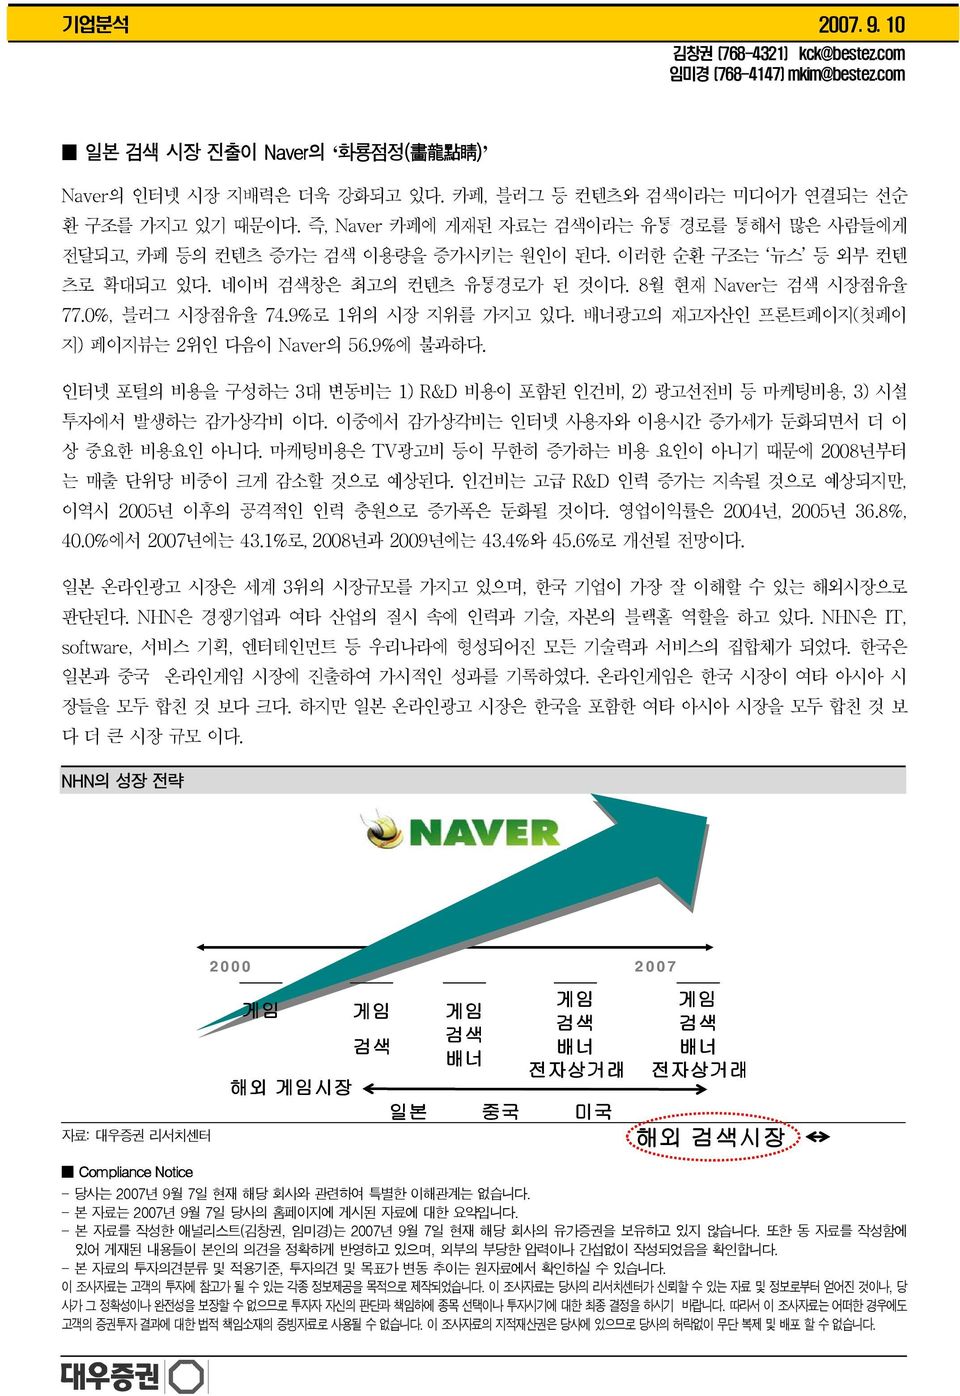 9%로 1위의 시장 지위를 가지고 있다. 배너광고의 재고자산인 프론트페이지(첫페이 지) 페이지뷰는 2위인 다음이 Naver의 56.9%에 불과하다. 인터넷 포털의 비용을 구성하는 3대 변동비는 1) R&D 비용이 포함된 인건비, 2) 광고선전비 등 마케팅비용, 3) 시설 투자에서 발생하는 감가상각비 이다.